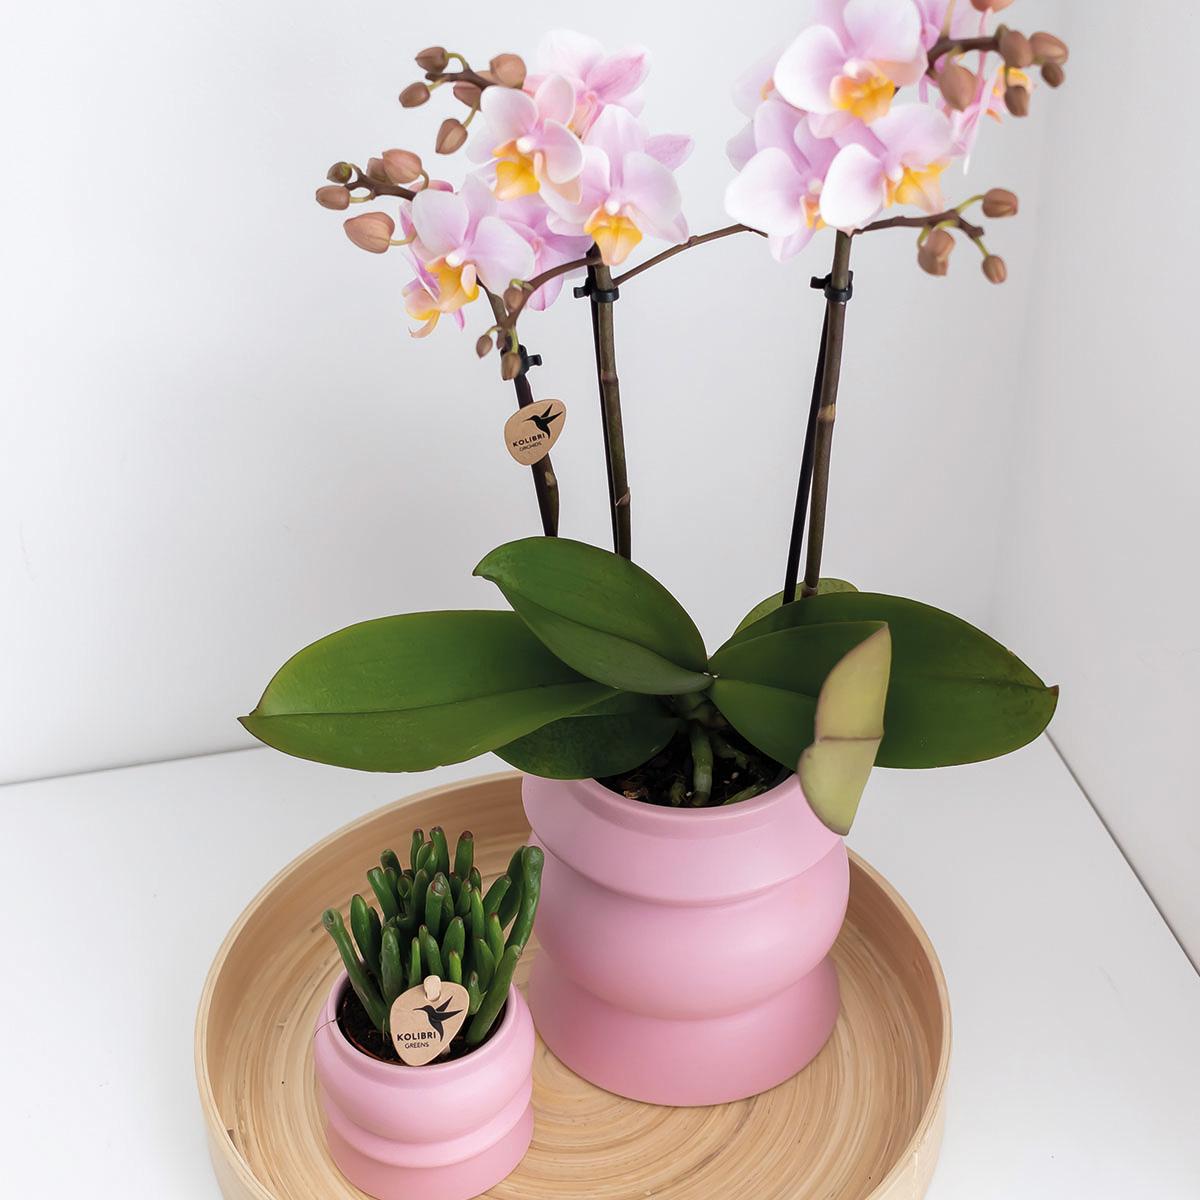 Kolibri Orchids | Roze phalaenopsis orchidee - Andorra - potmaat Ø9cm | bloeiende kamerplant - vers van de kweker Kolibri Orchids | COMBI DEAL van 2 Roze phalaenopsis orchideeën - Andorra - potmaat Ø9cm | bloeiende kamerplant - vers van de kweker